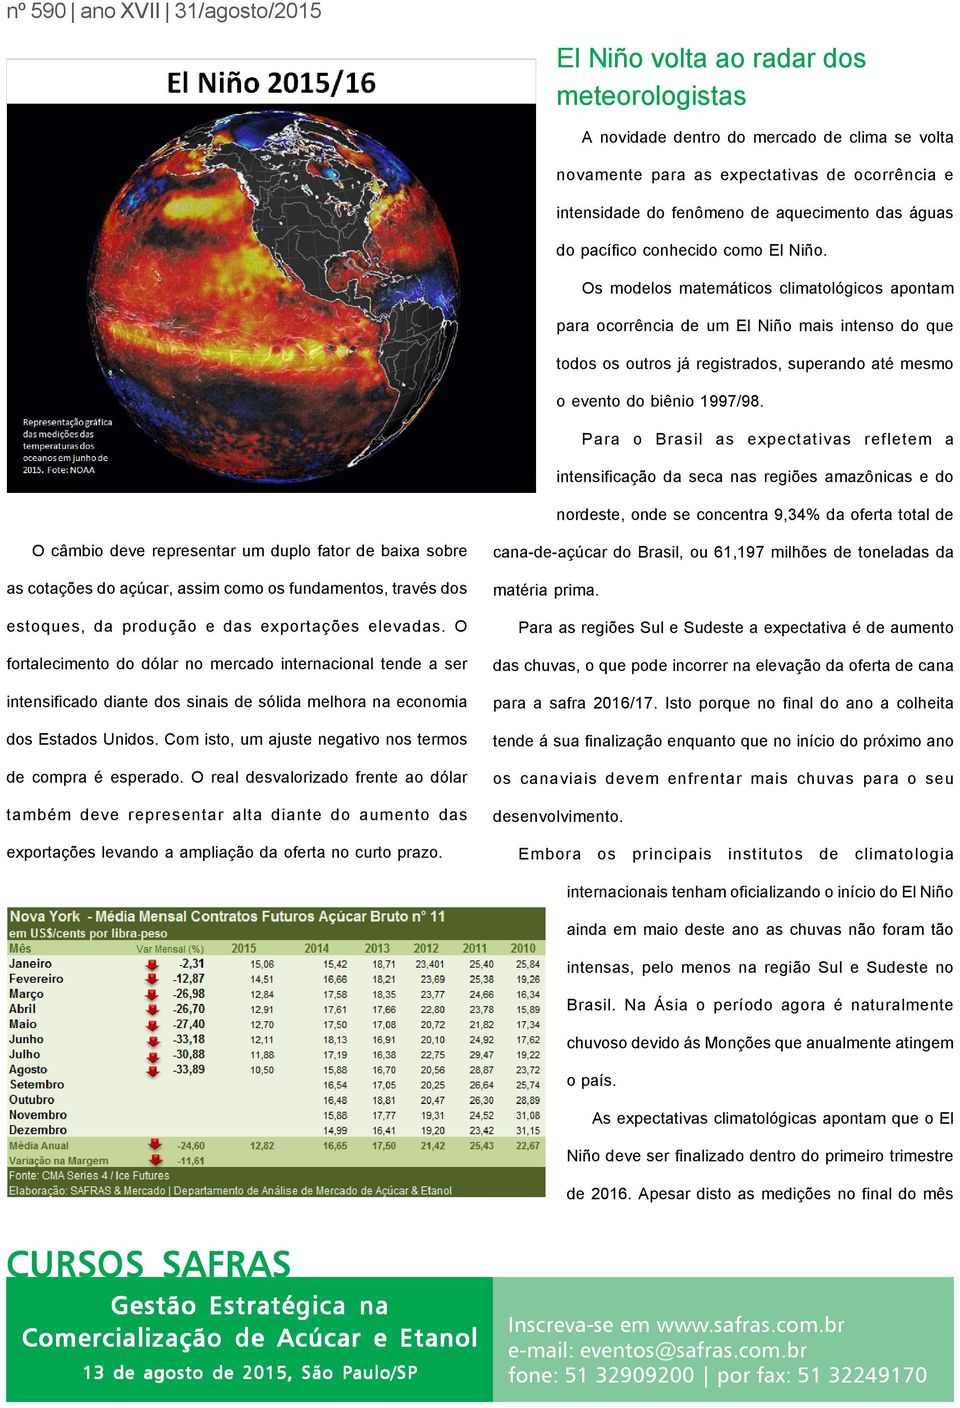 Os modelos matemáticos climatológicos apontam para ocorrência de um El Niño mais intenso do que todos os outros já registrados, superando até mesmo o evento do biênio 1997/98.